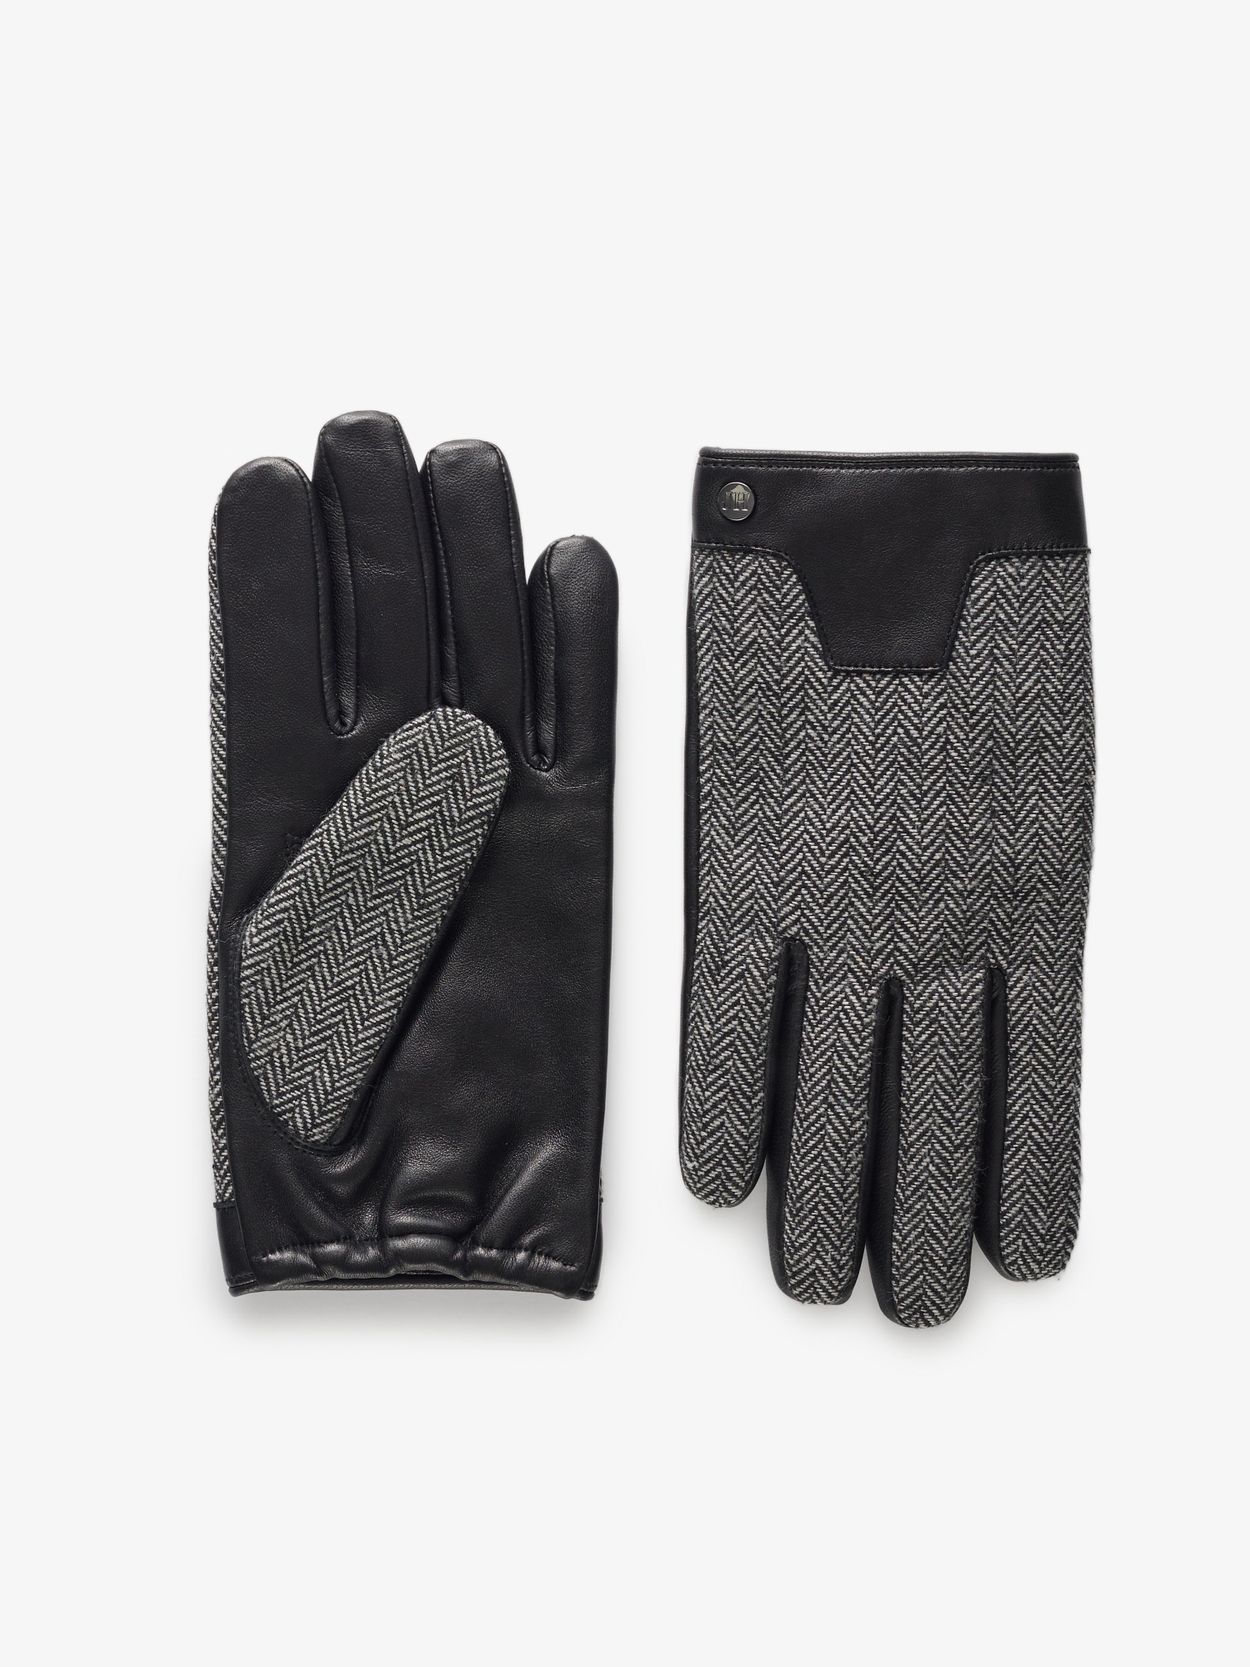 Image number 5 for product Mütze, Schal und Handschuhe aus grauer Wolle